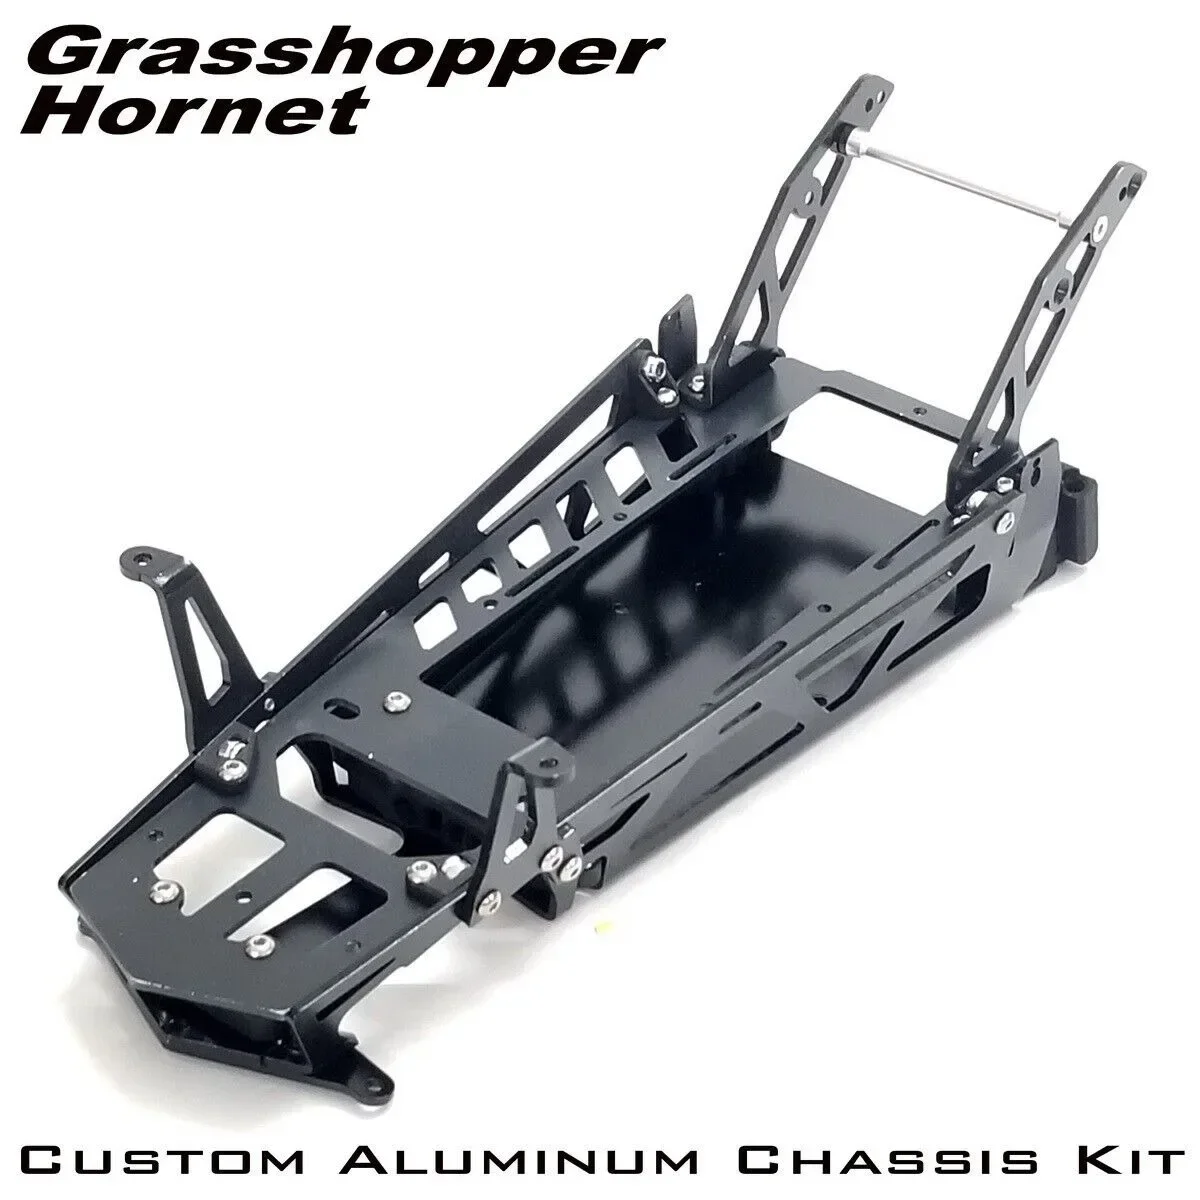 

RC Custom Aluminum Frame Chassis Kit for Tamiya Grasshopper/Hornet Chassis 1/10 Buggy Cars